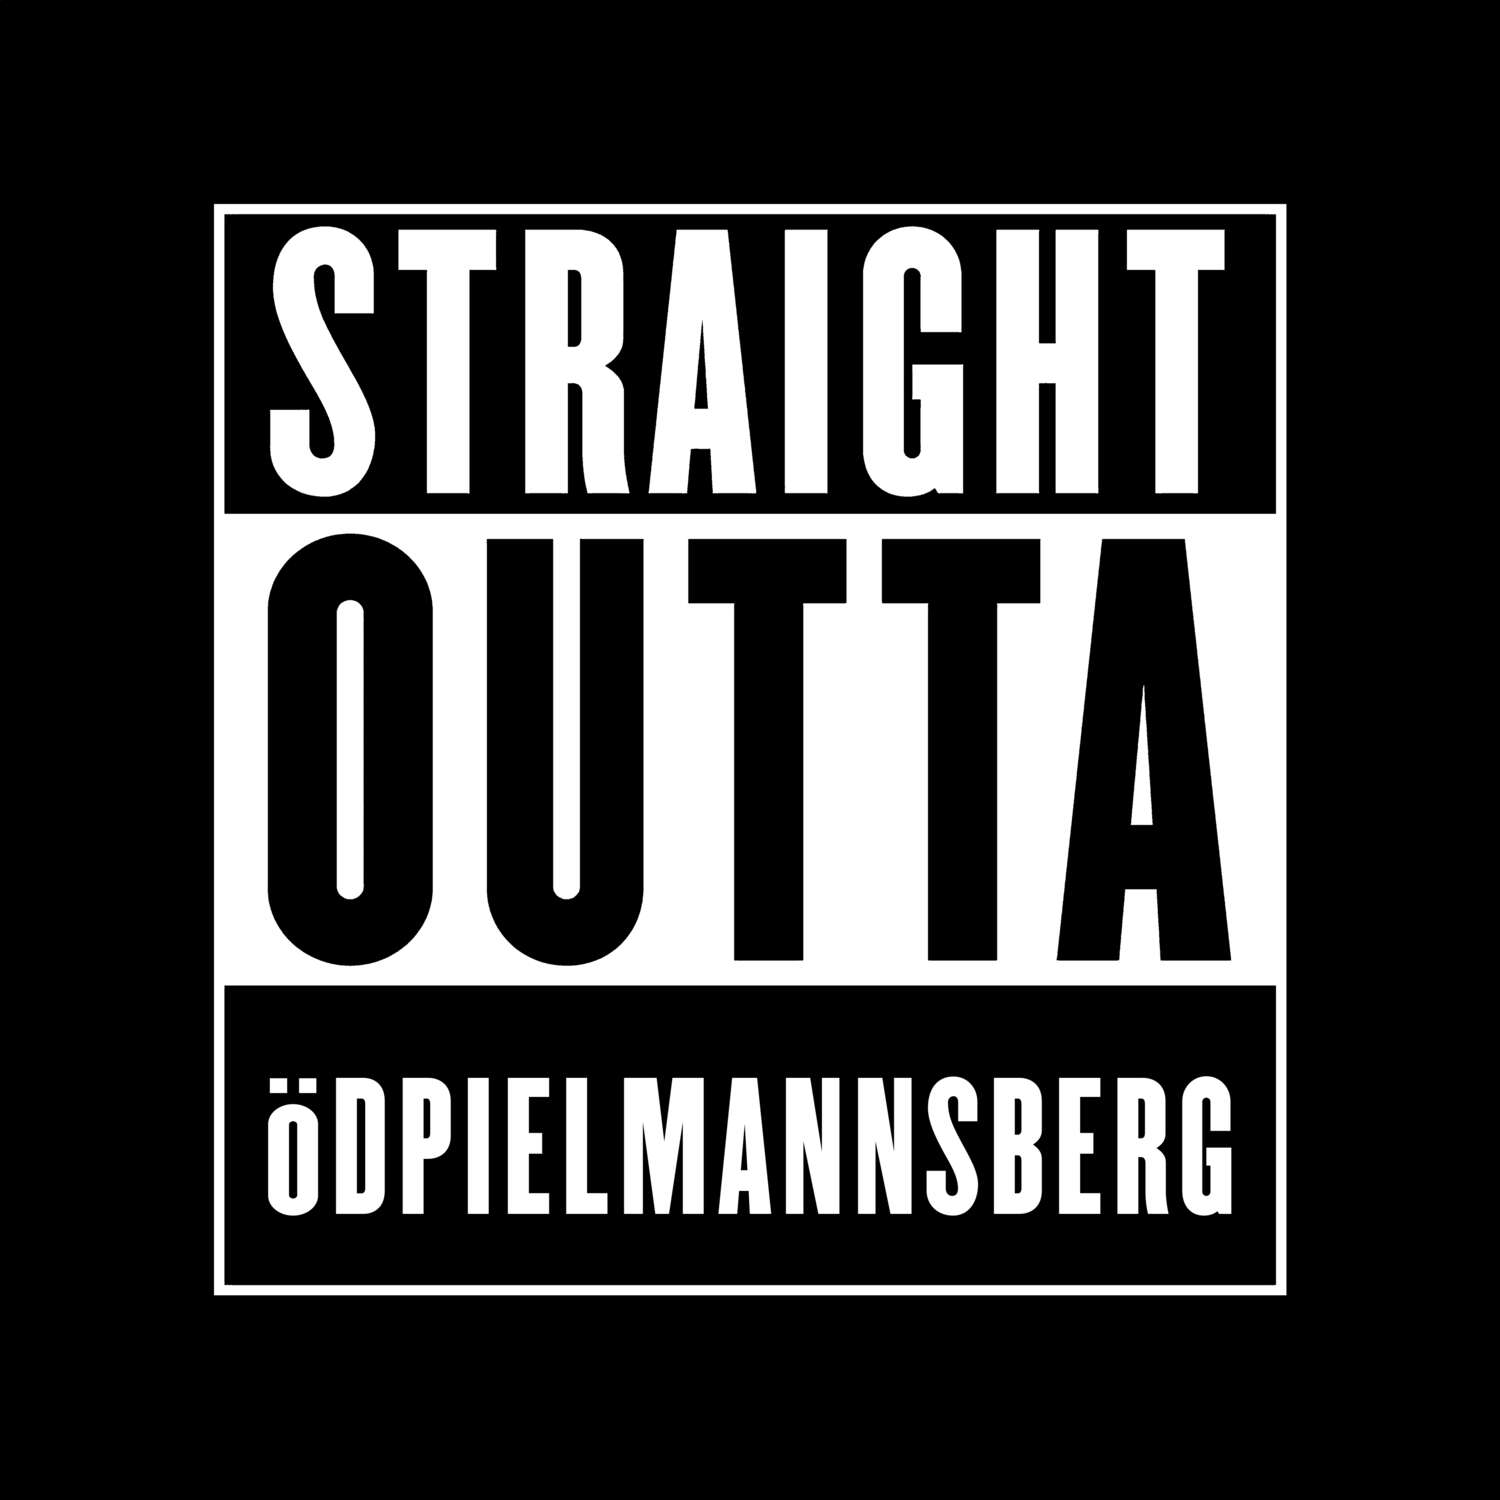 Ödpielmannsberg T-Shirt »Straight Outta«